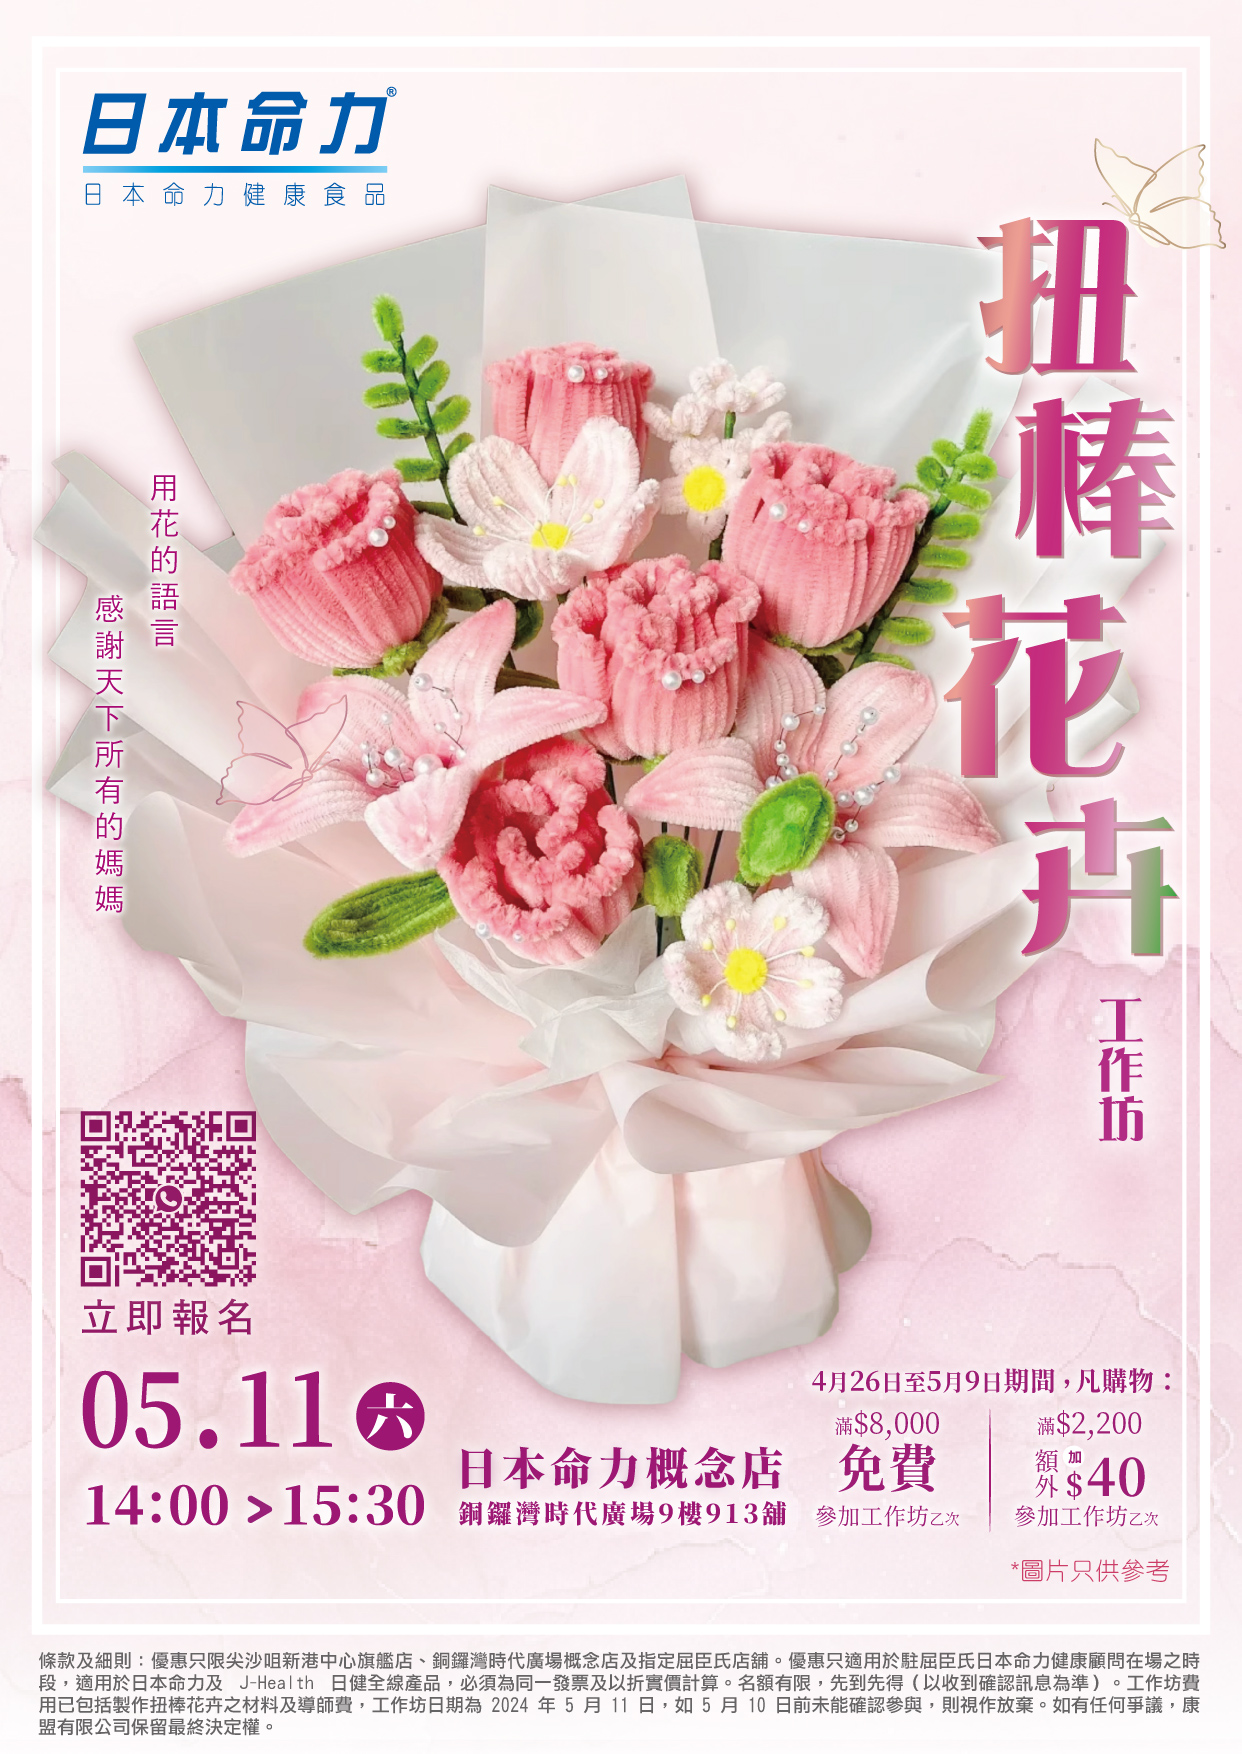 🌺扭棒花卉工作坊🌿 母亲节特别企划，用手工花卉表达爱意💕！